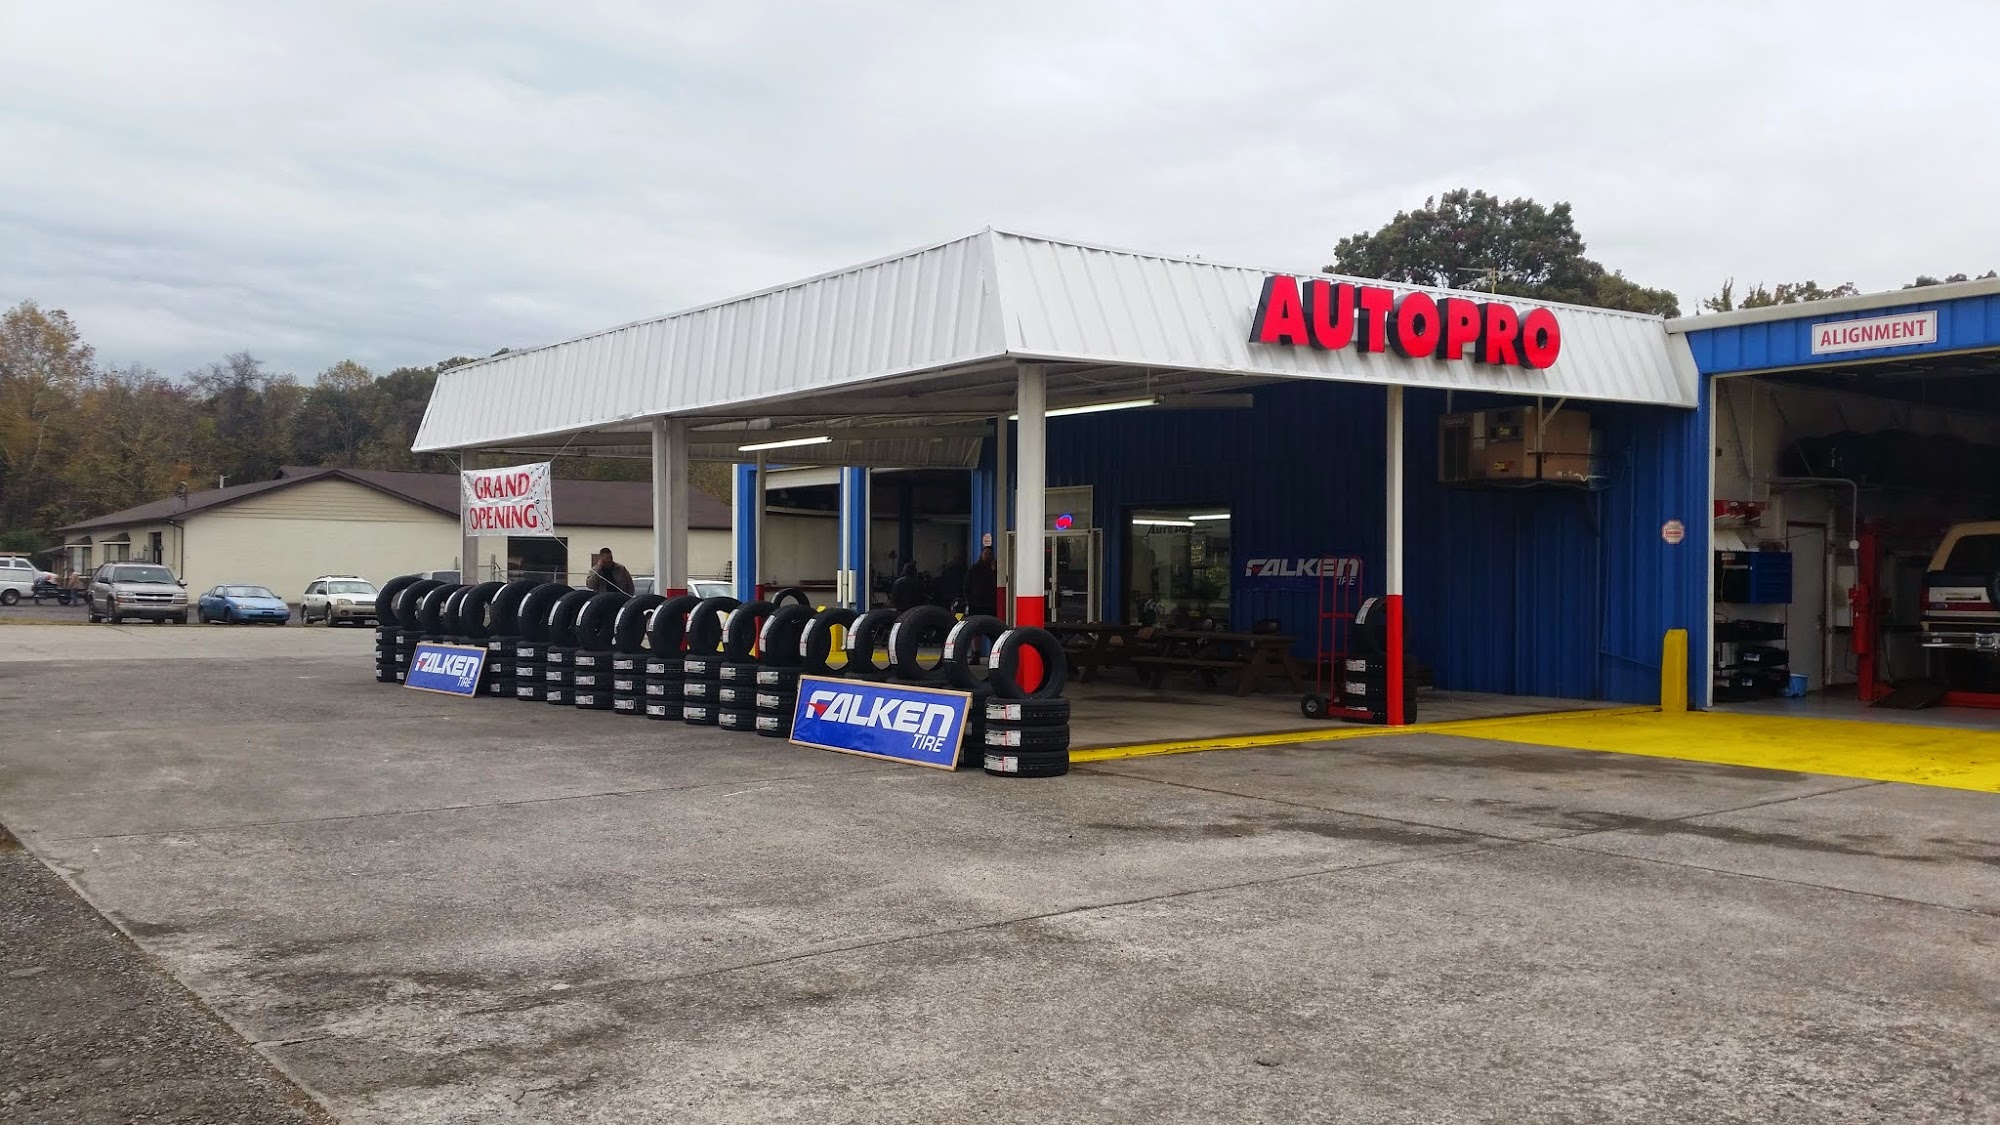 Auto Pro Tires & Services